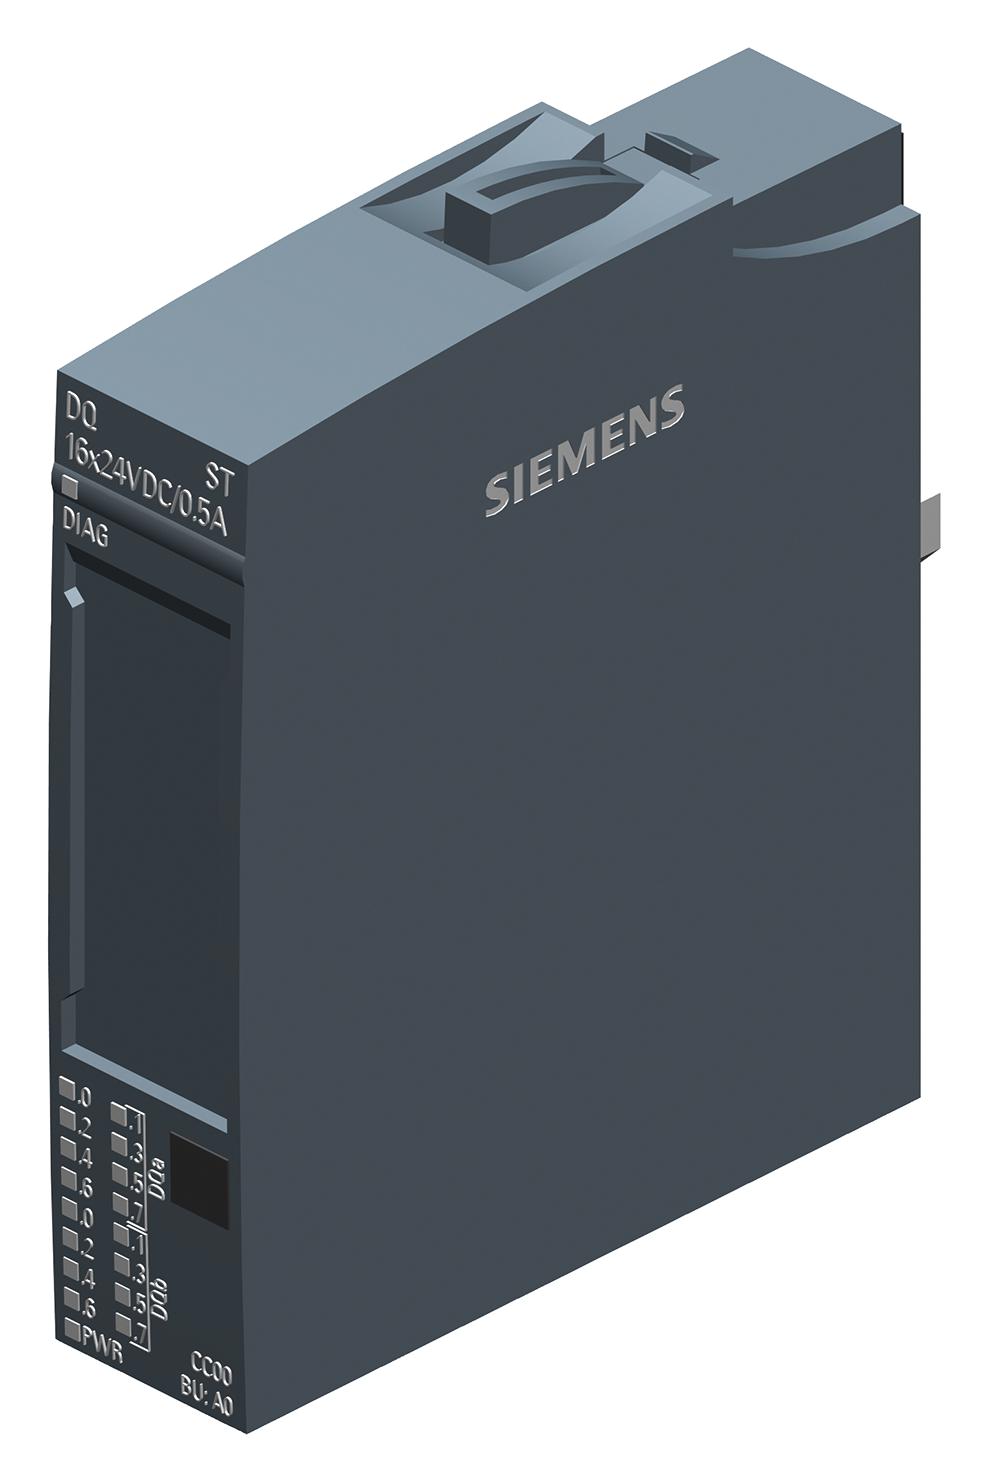 Siemens 6Es7132-6Bh01-0Ba0. Digital O/p Module, 16 O/p, 24Vdc